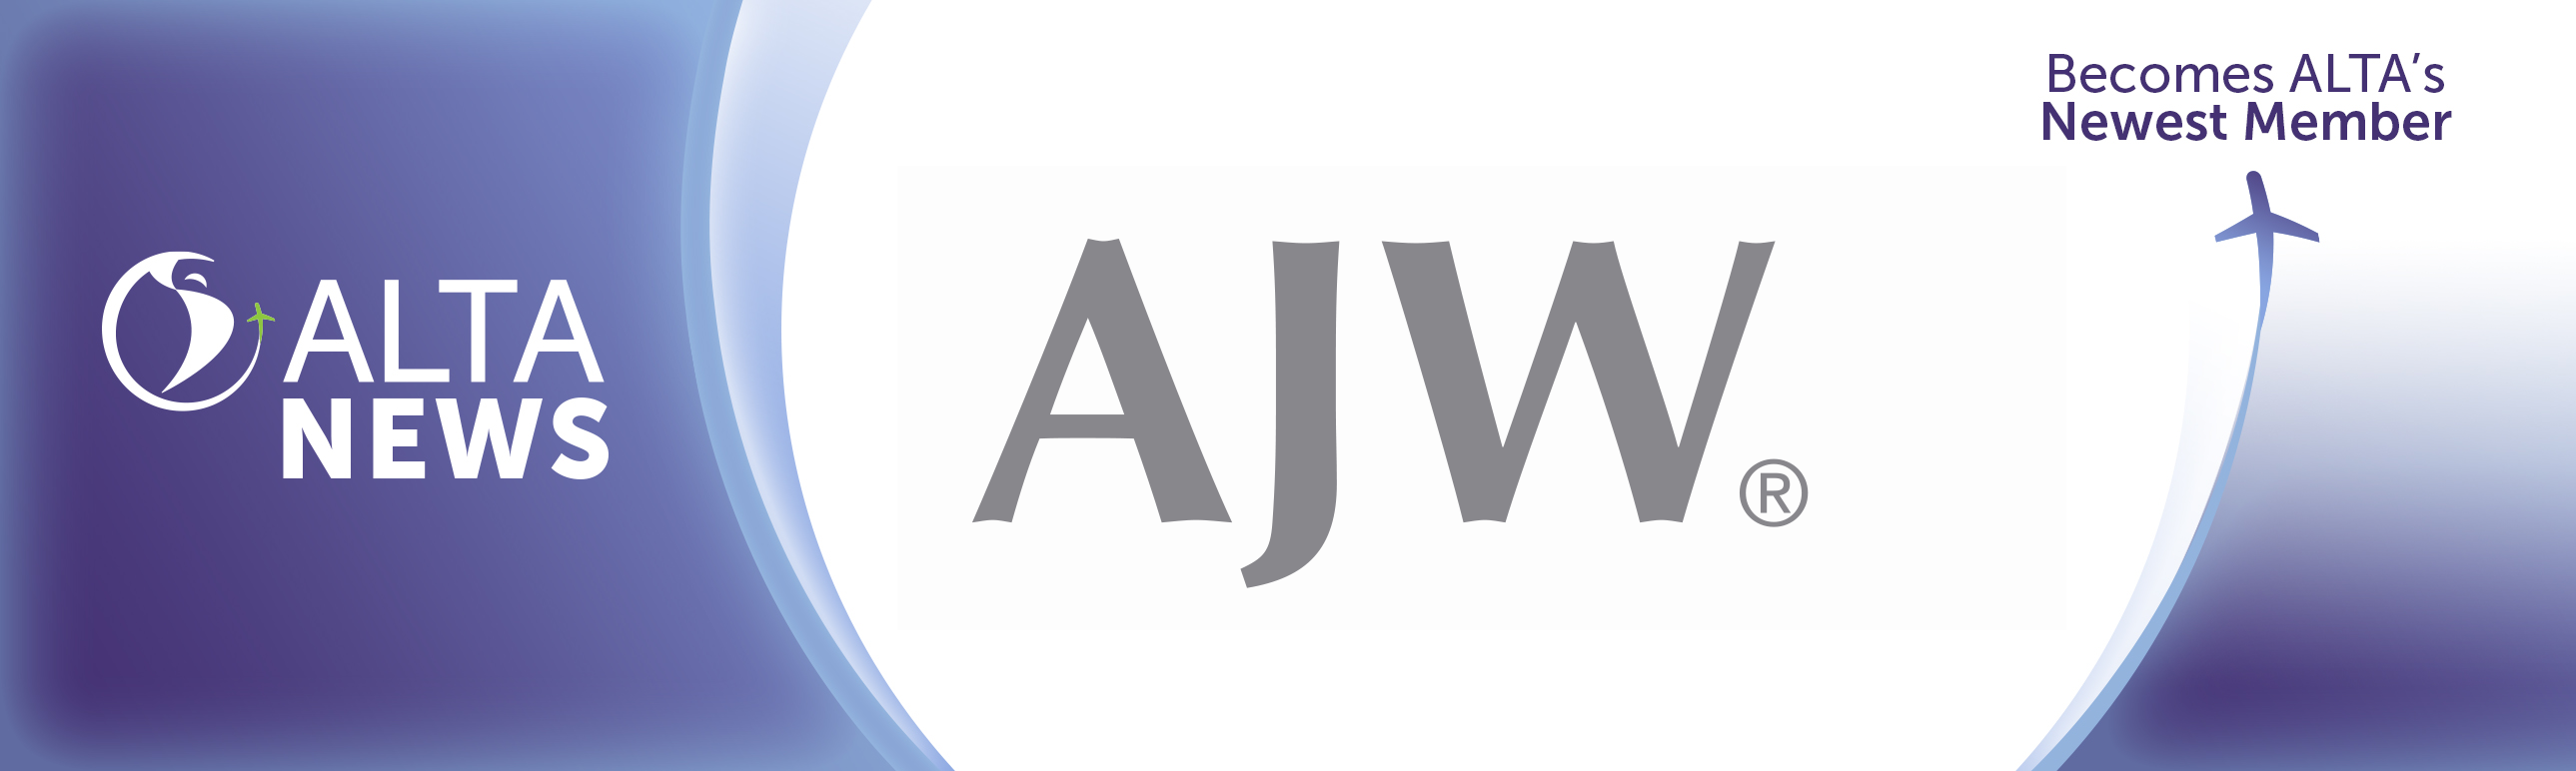 ALTA NEWS - Grupo AJW expande sua presença na América Latina, unindo-se à ALTA